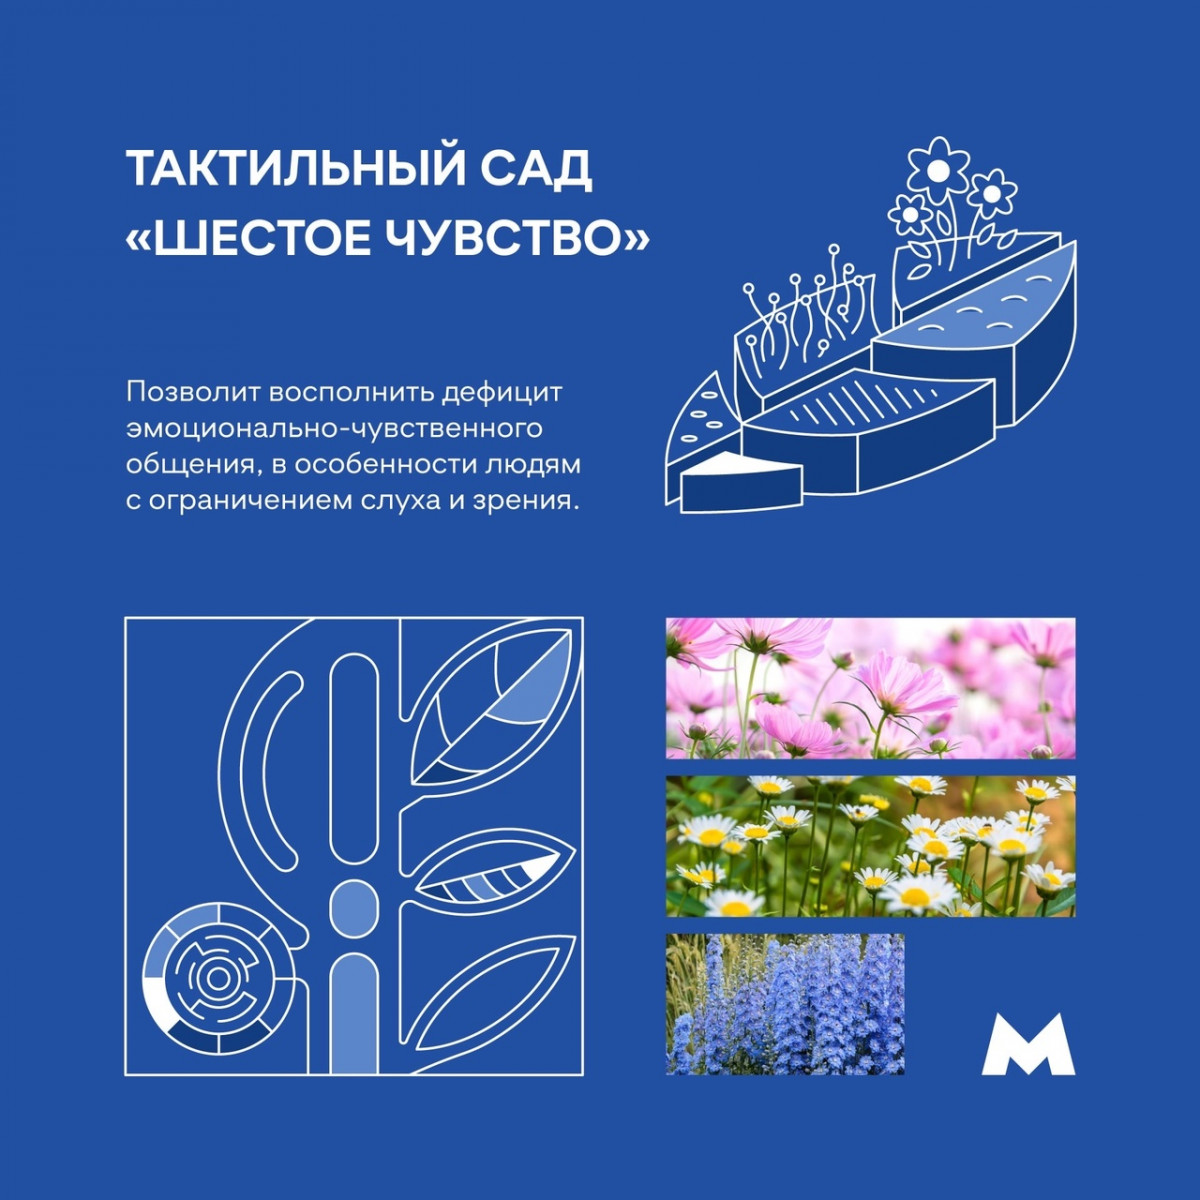 Тактильные сады предлагают создать около новых станций нижегородского метро